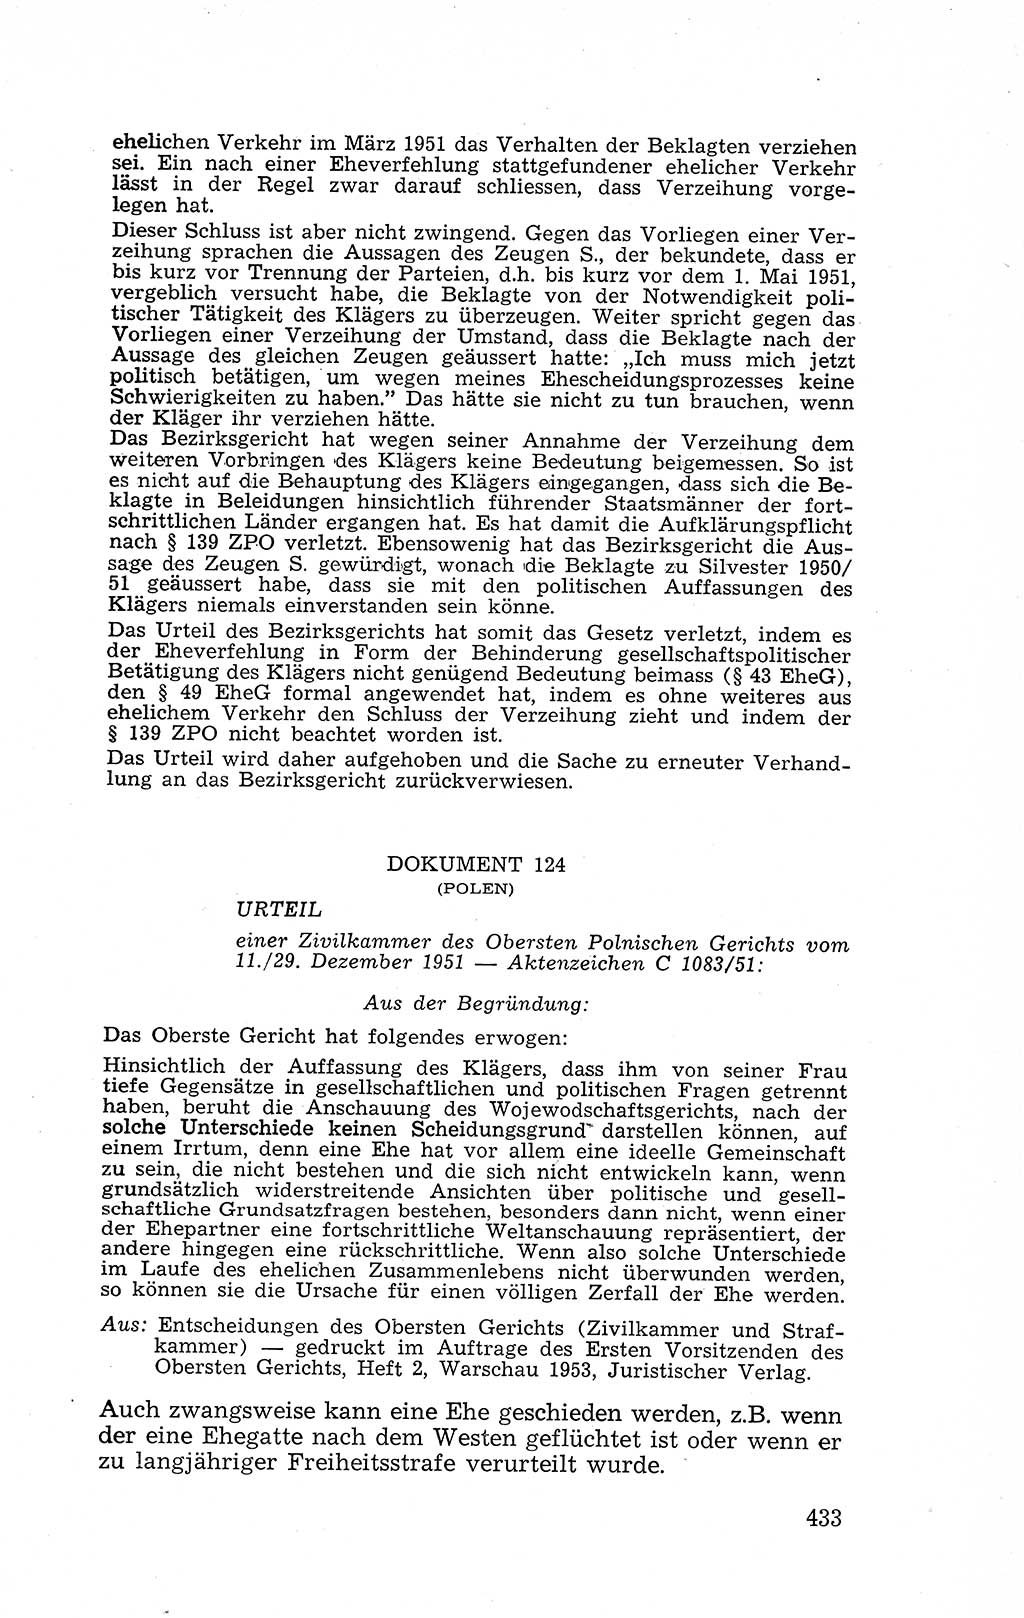 Recht in Fesseln, Dokumente, Internationale Juristen-Kommission [Bundesrepublik Deutschland (BRD)] 1955, Seite 433 (R. Dok. IJK BRD 1955, S. 433)